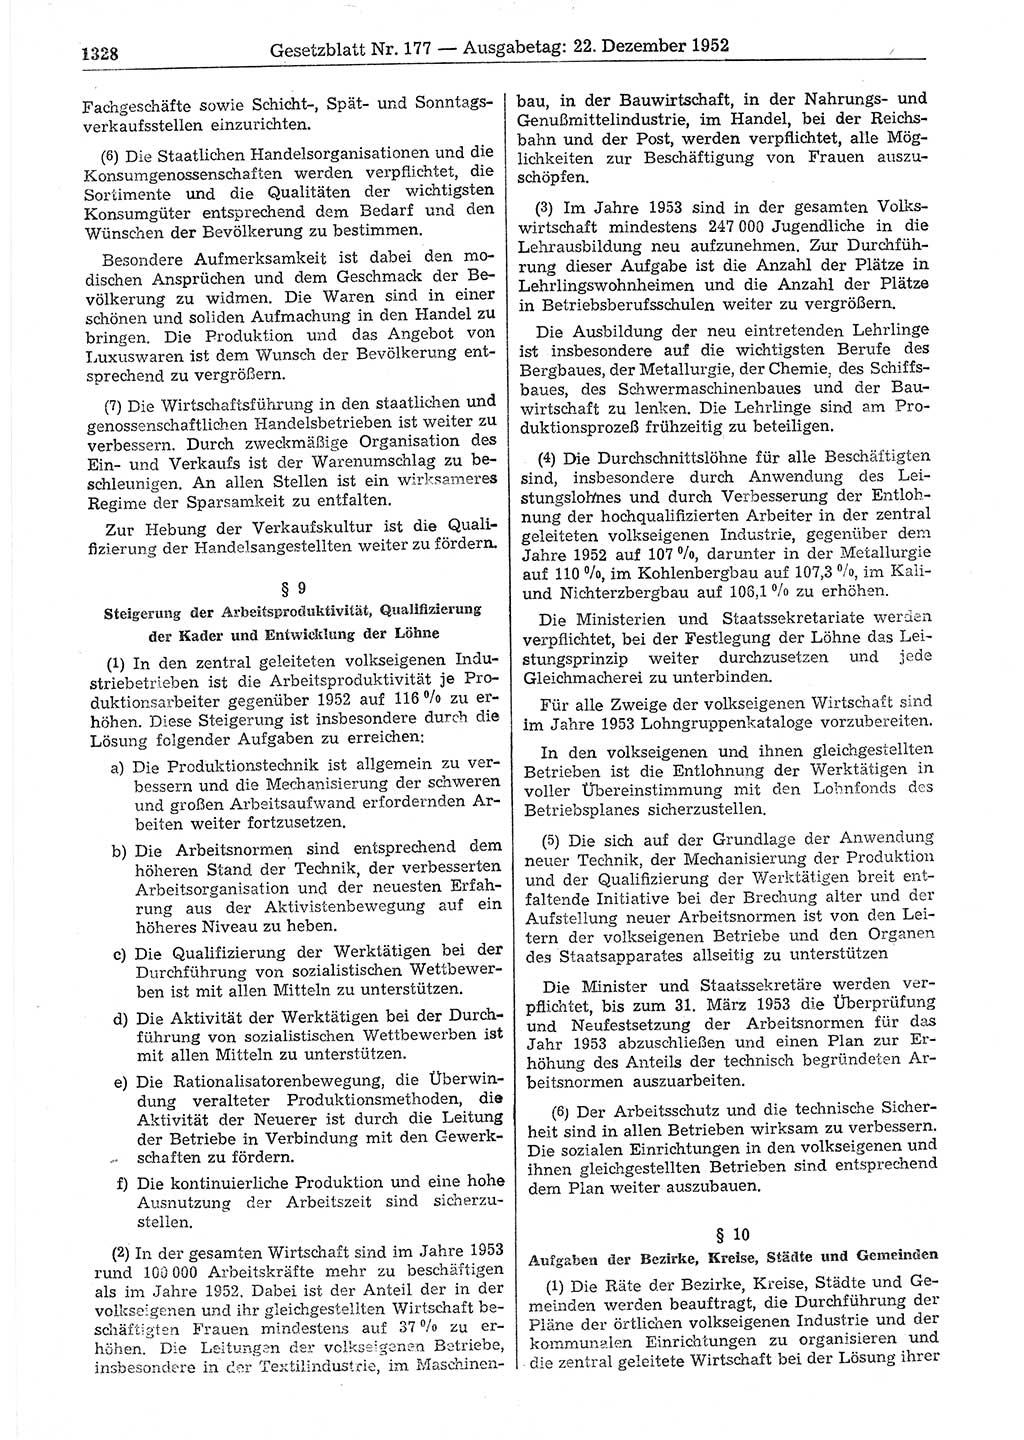 Gesetzblatt (GBl.) der Deutschen Demokratischen Republik (DDR) 1952, Seite 1328 (GBl. DDR 1952, S. 1328)